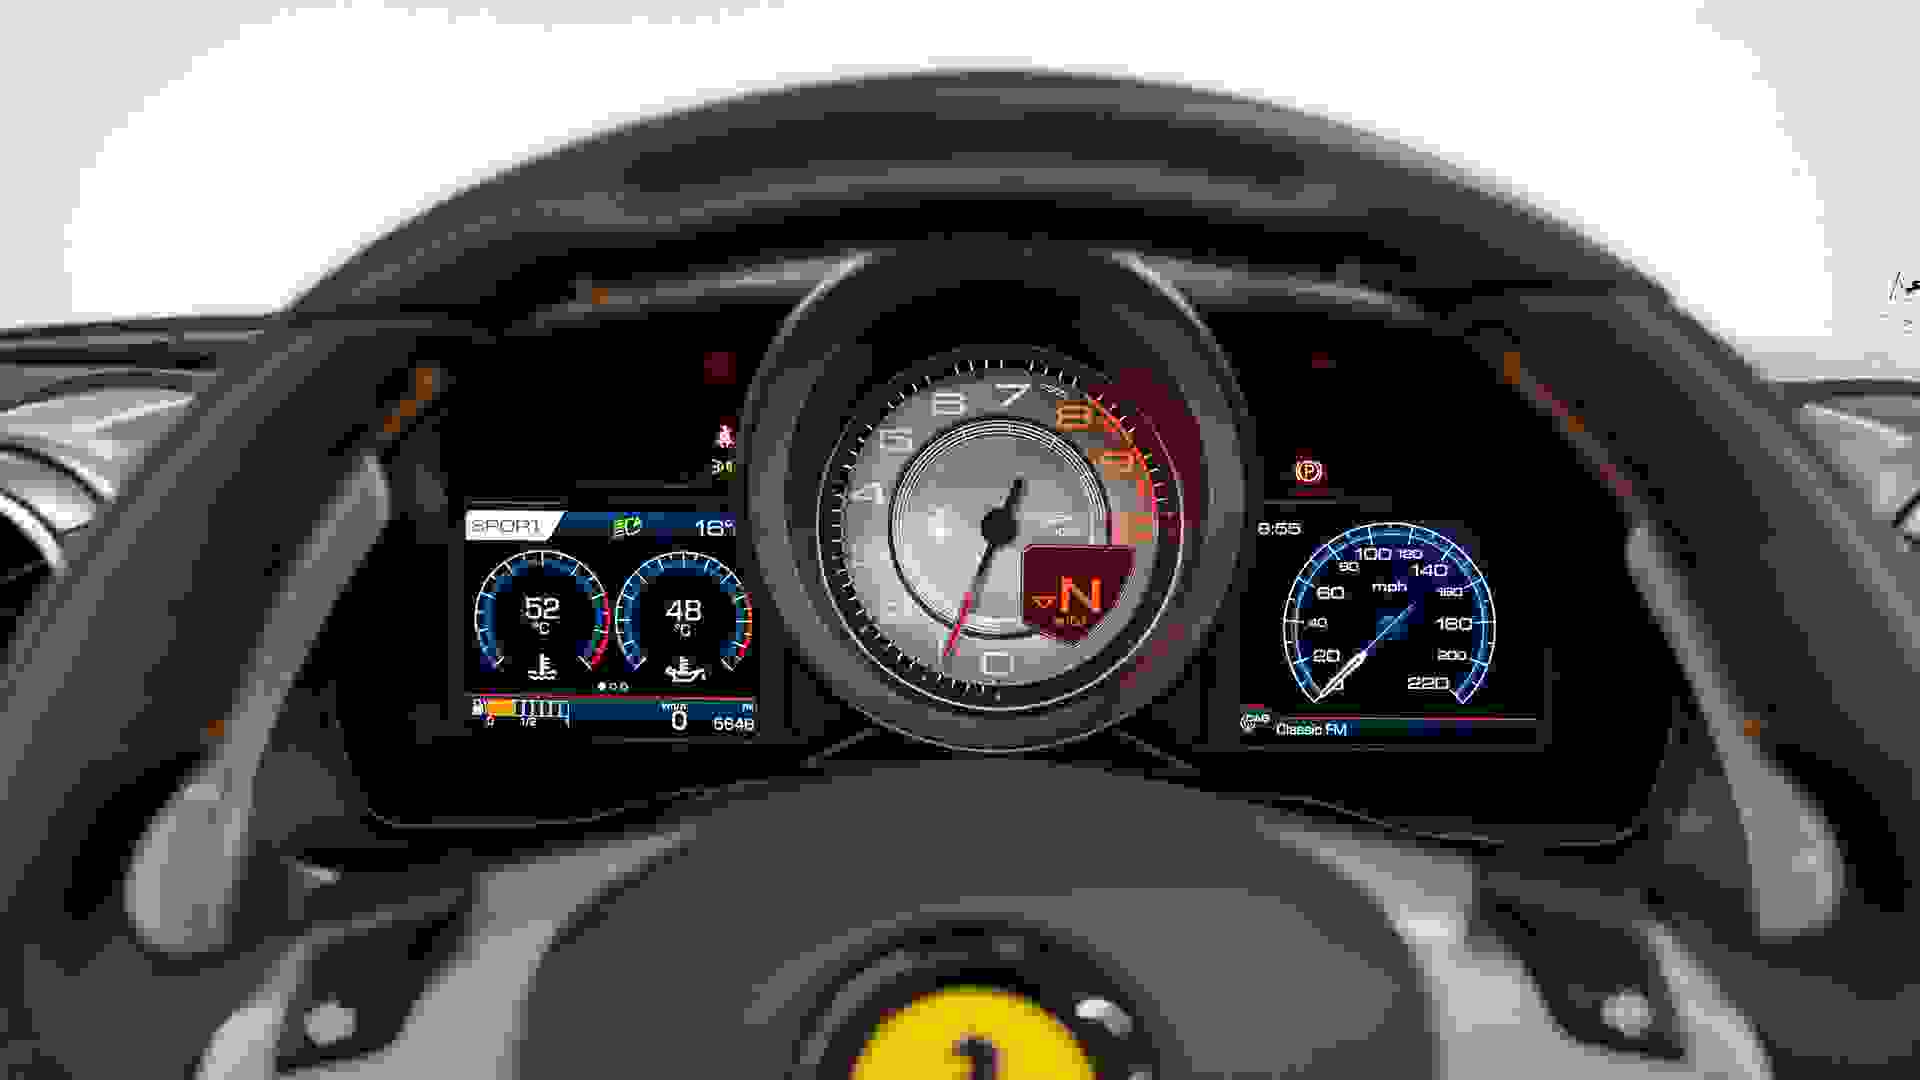 Ferrari F8 Photo 814f21a0-239b-4b1e-b1f4-26279b9ad575.jpg